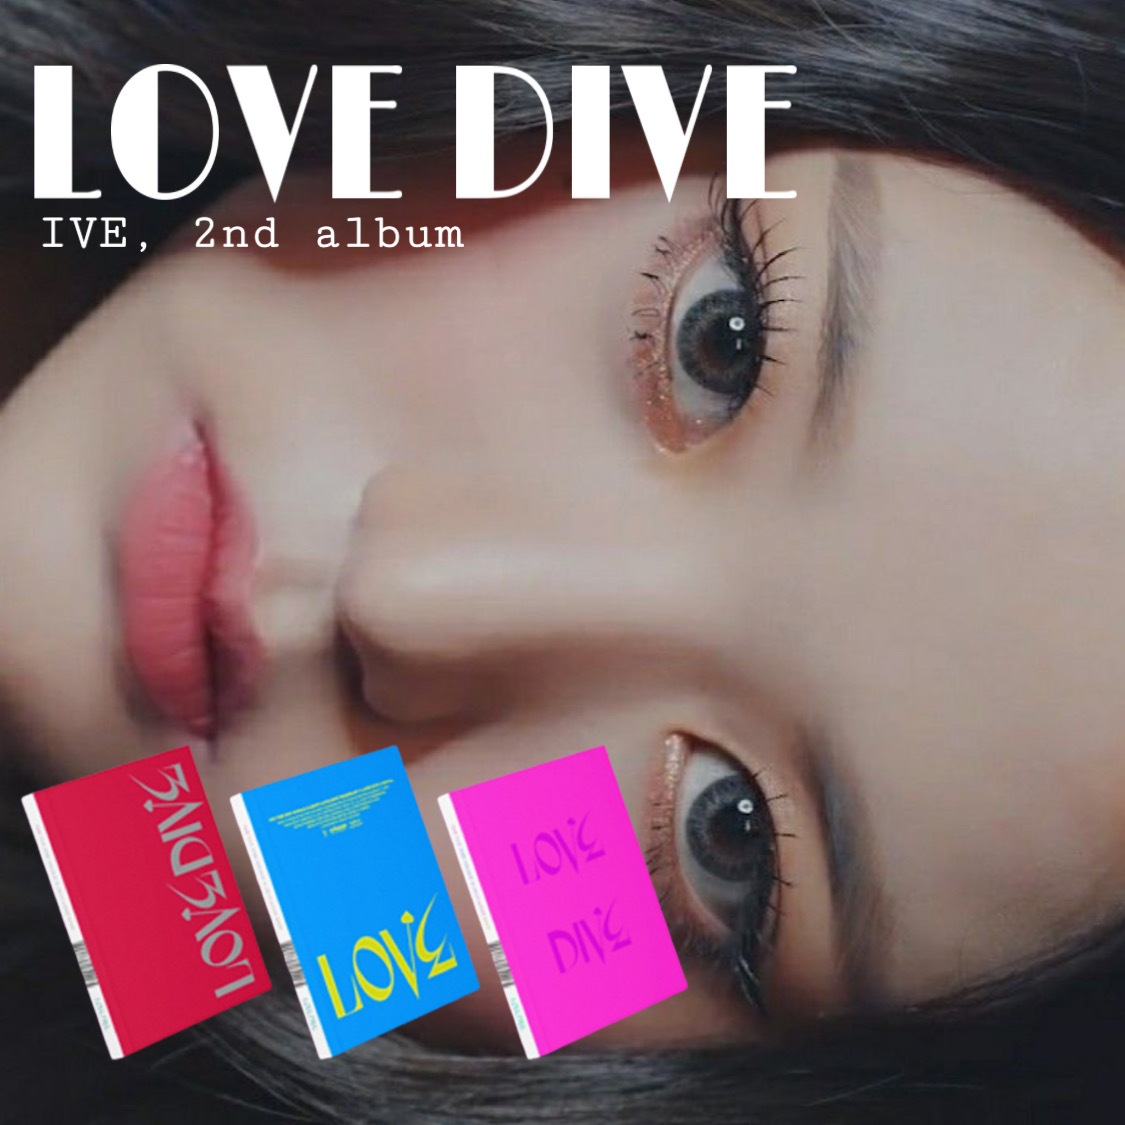 早い者勝ち [IVE] DIVEセカンドシングルアルバム（オーセンティック）3バージョン LOVE KPOP CD